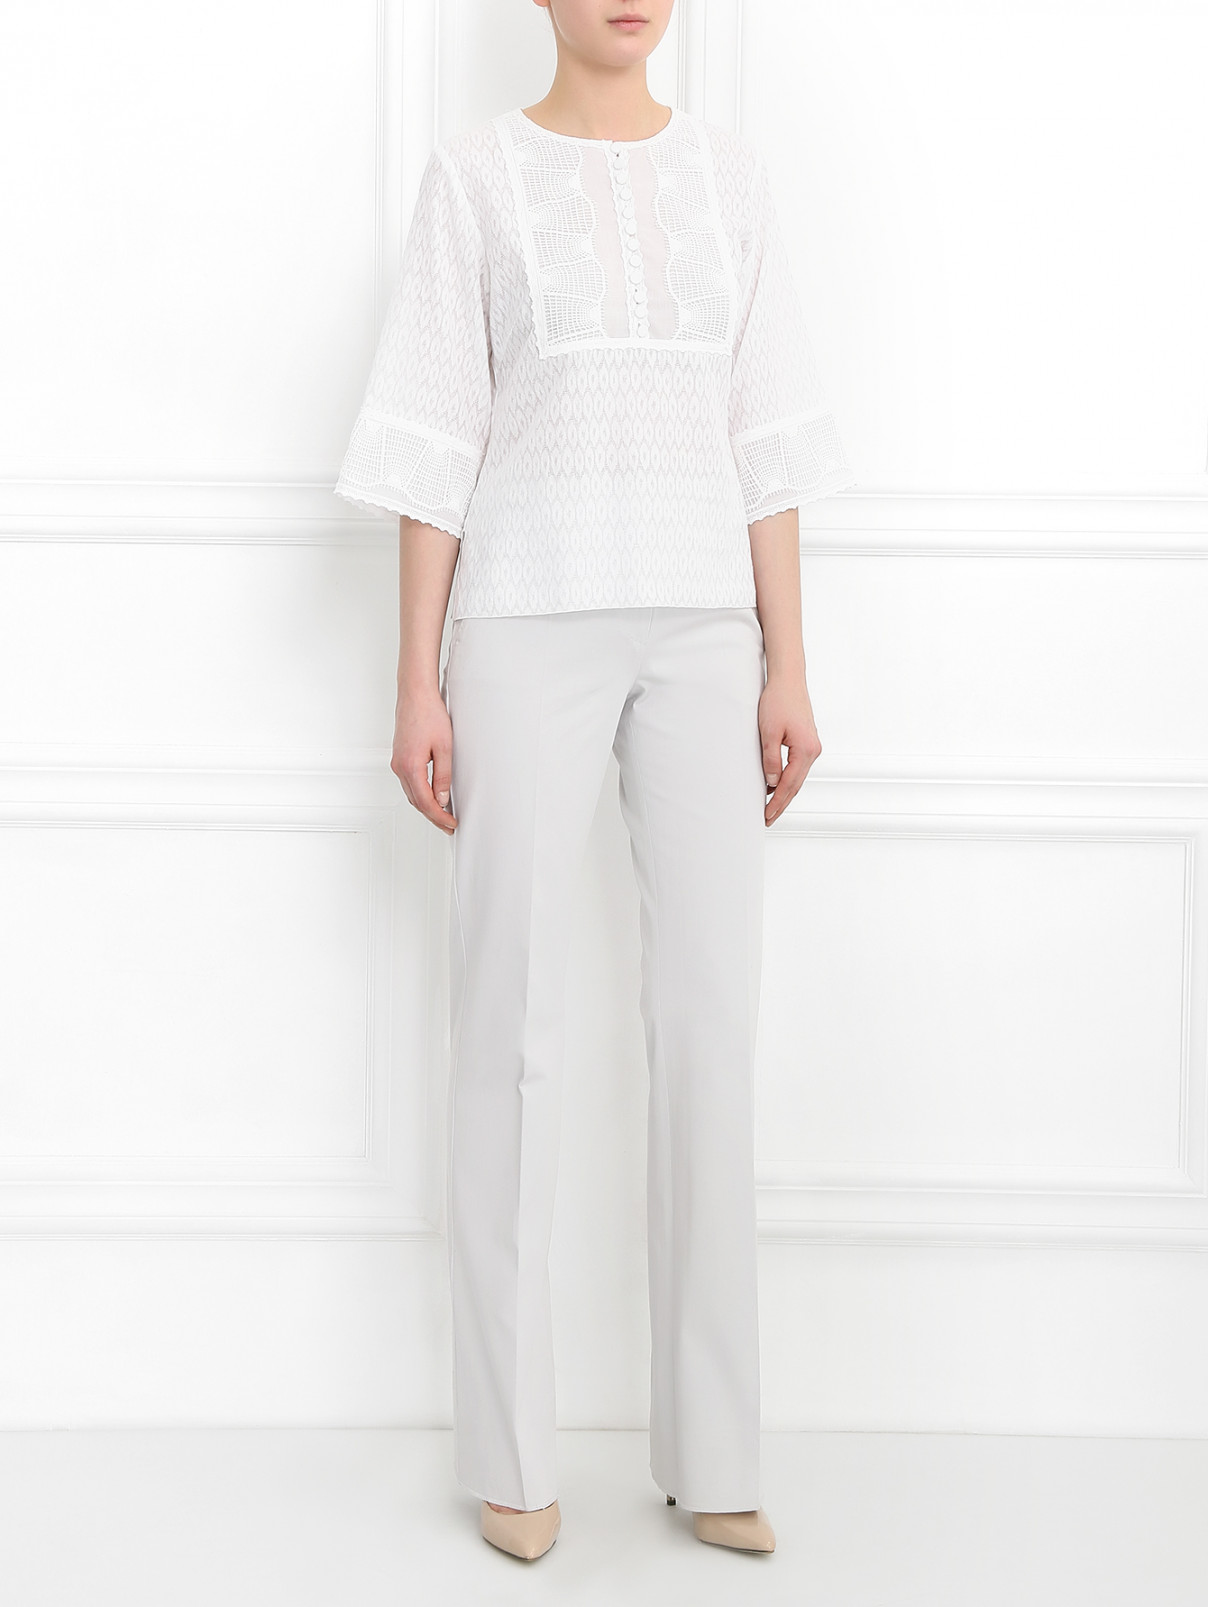 Блуза из хлопка с кружевными вставками Andrew GN  –  Модель Общий вид  – Цвет:  Белый